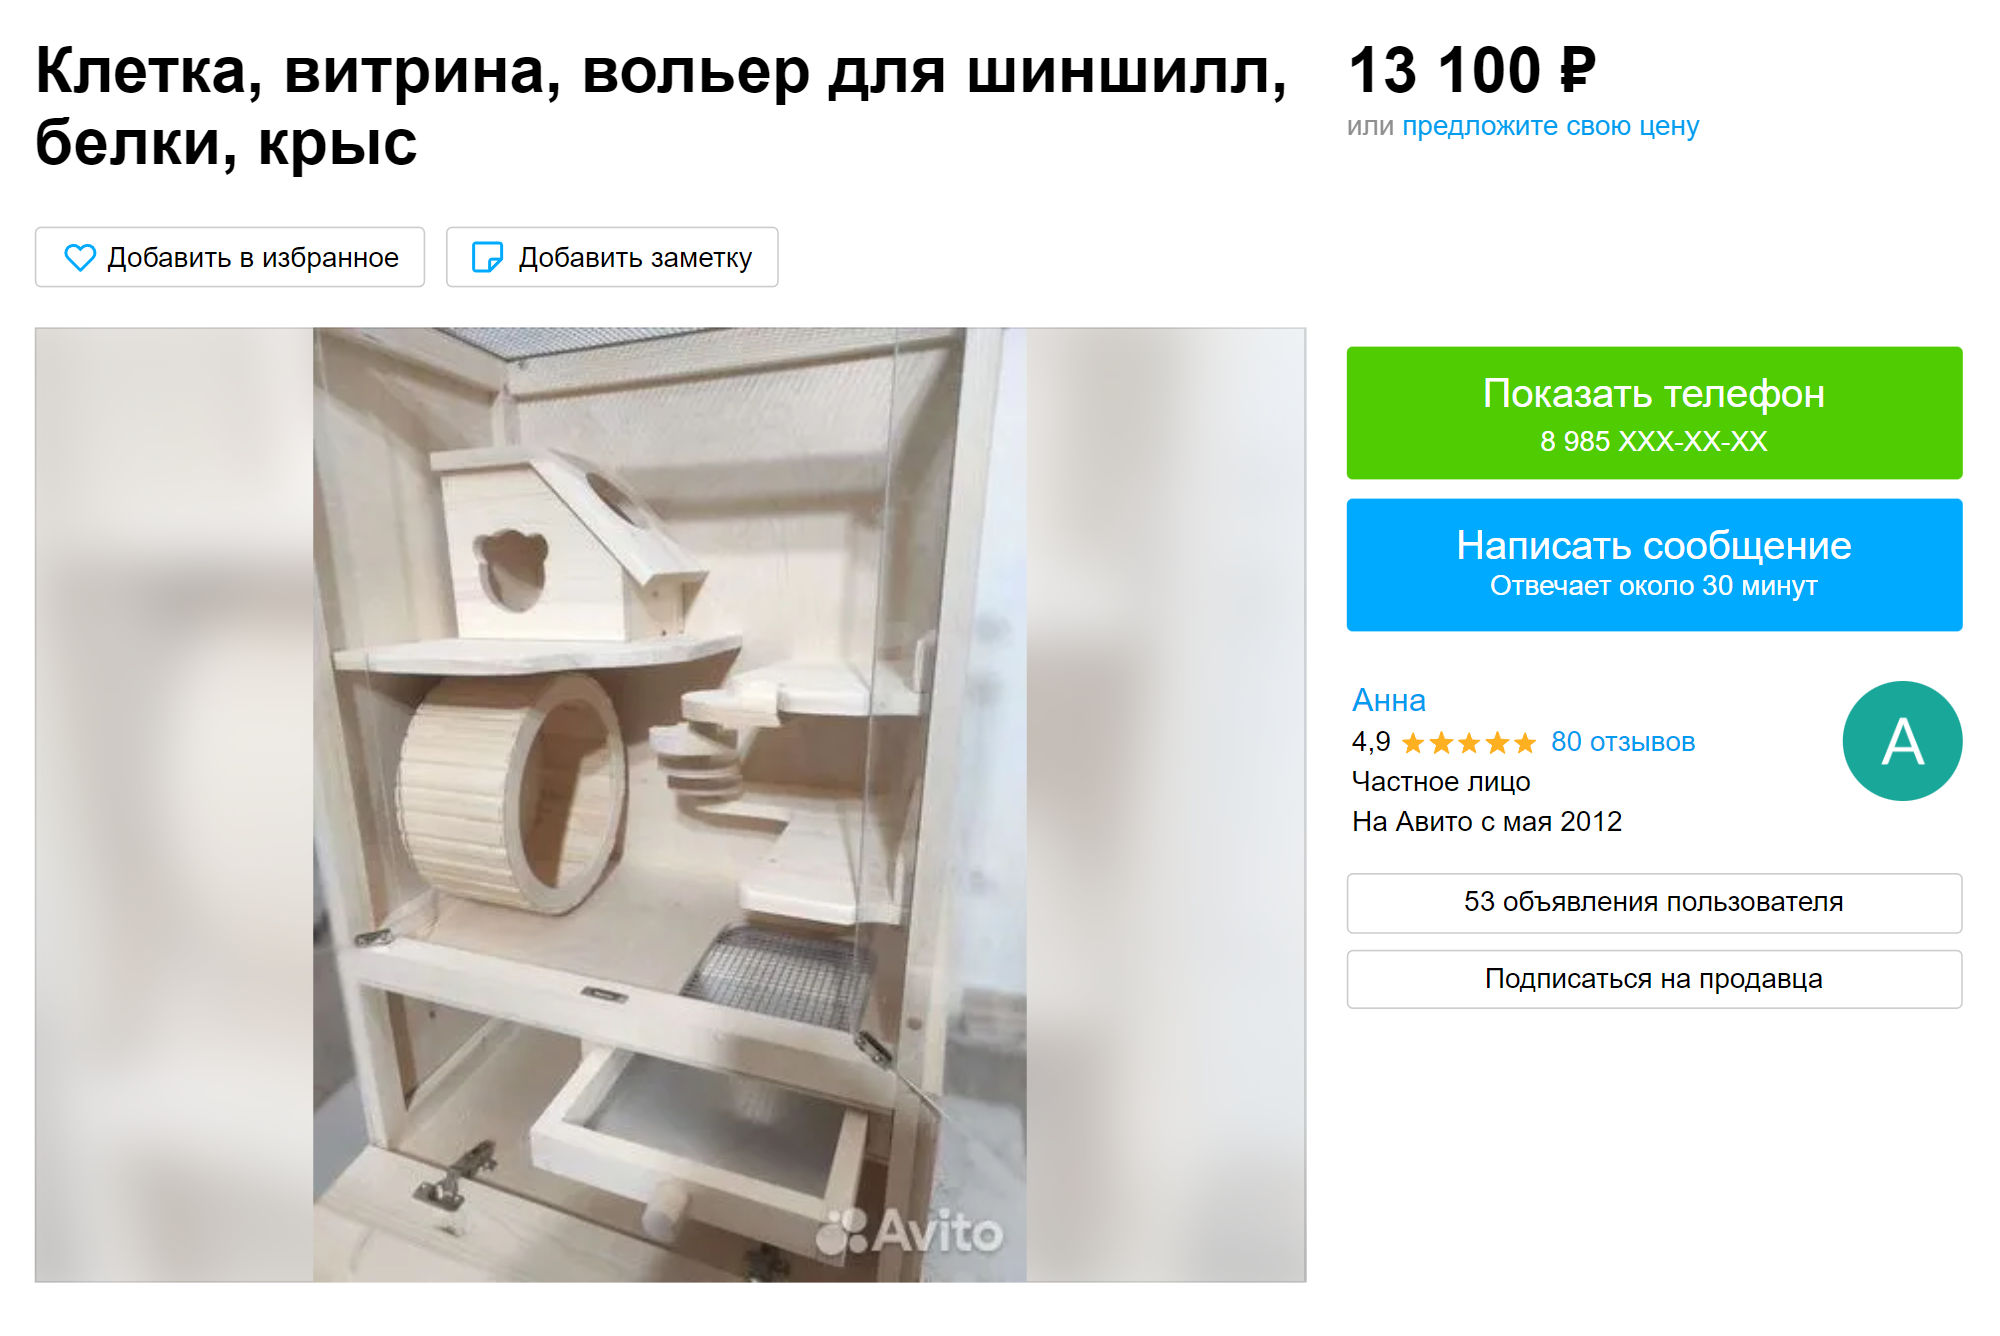 Деревянный вариант тоже вряд ли подойдет, к тому же это дорого. Источник: avito.ru